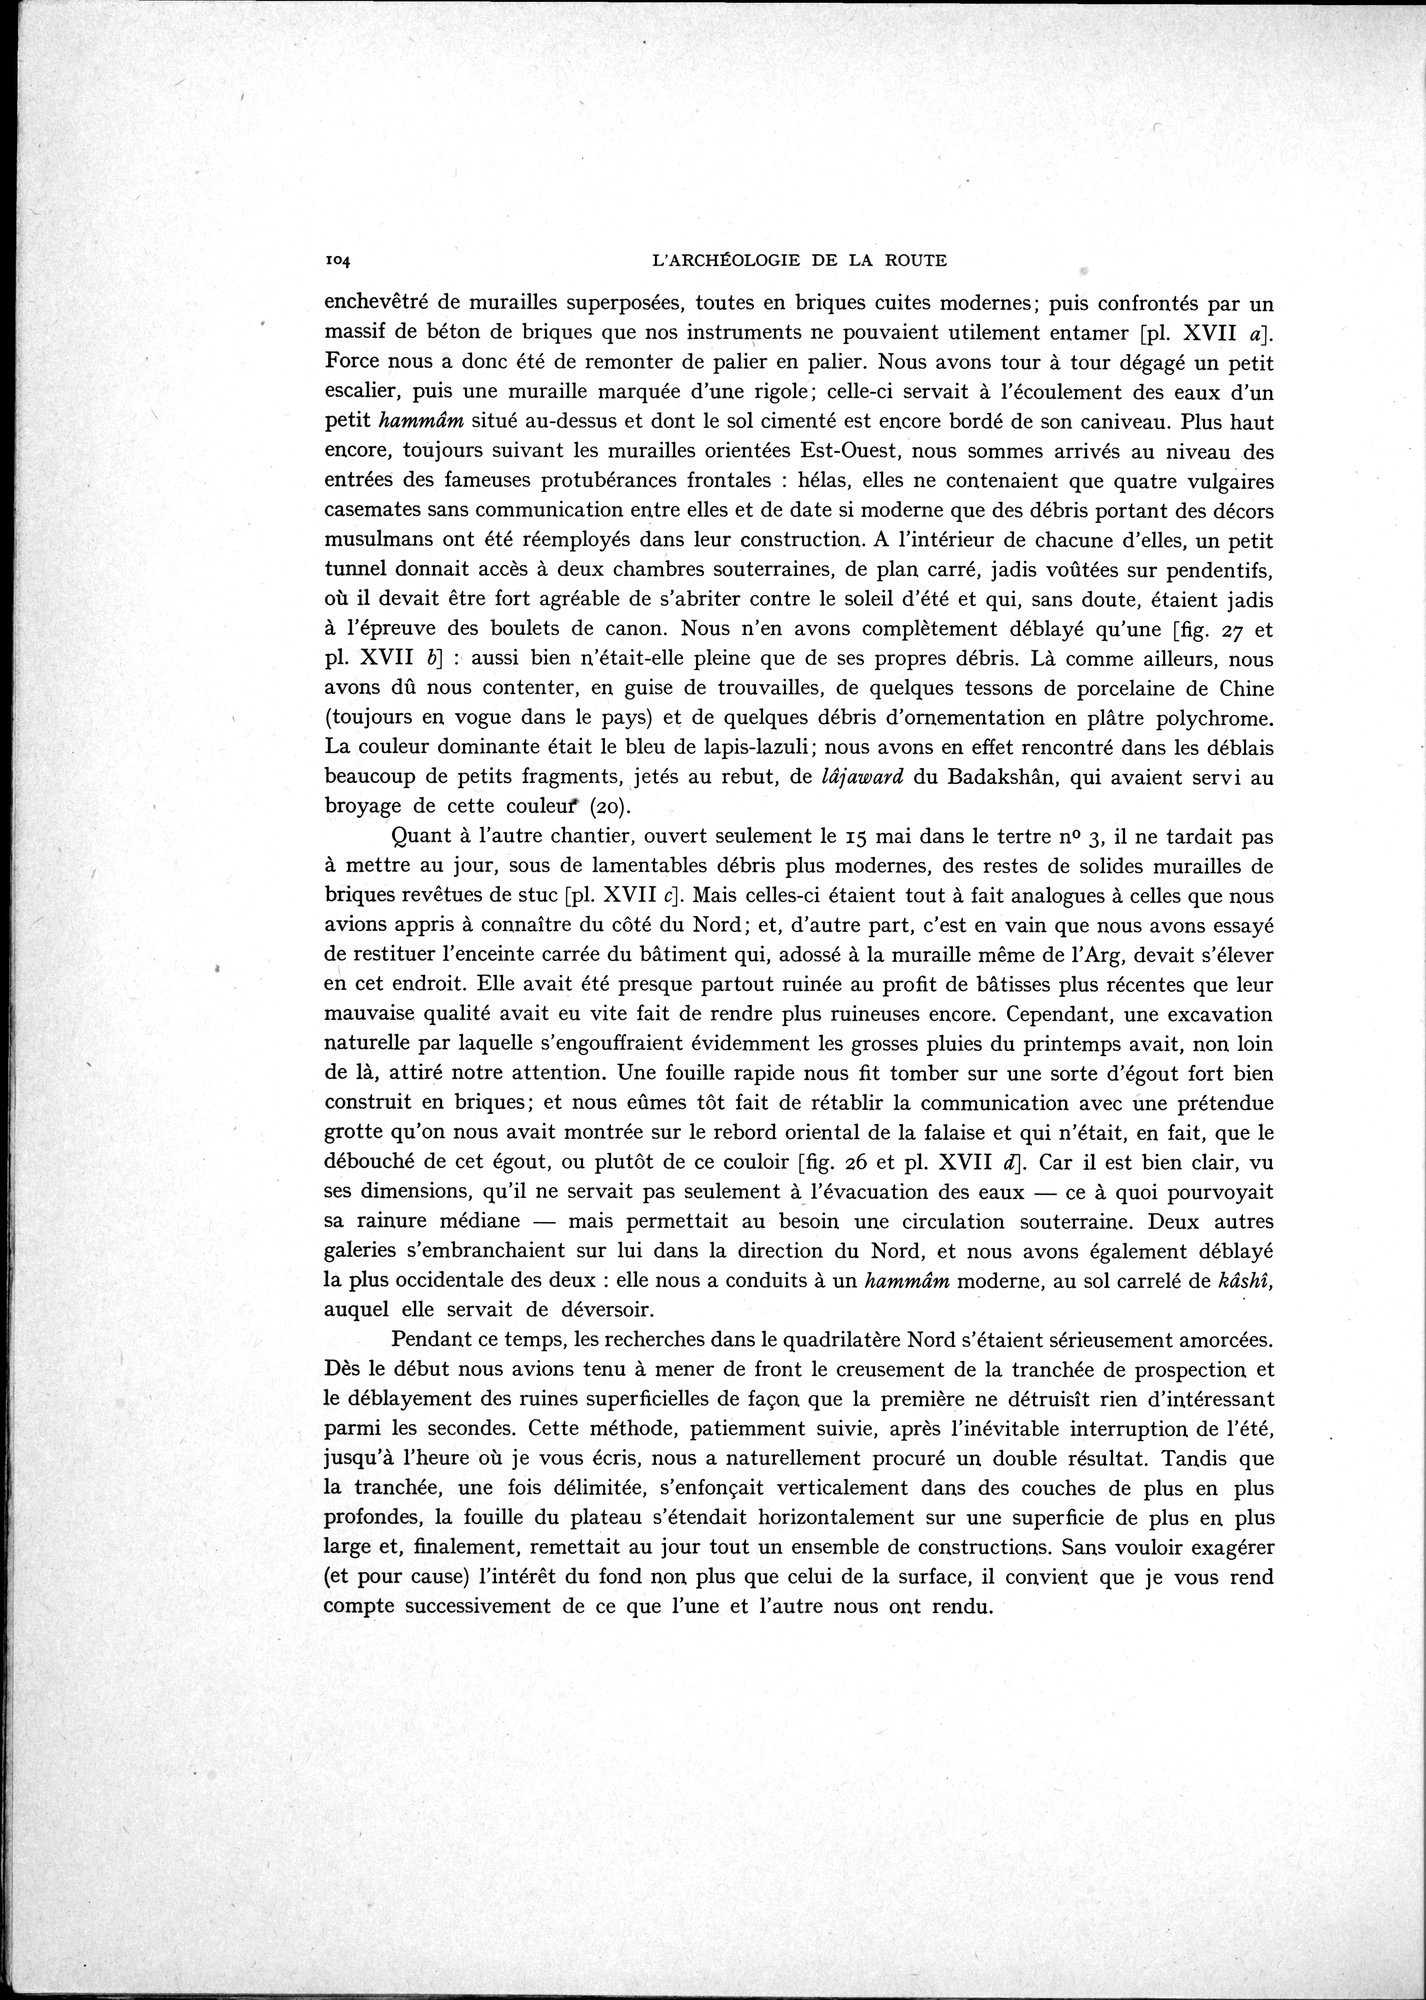 La Vieille Route de l'Inde de Bactres à Taxila : vol.1 / Page 114 (Grayscale High Resolution Image)